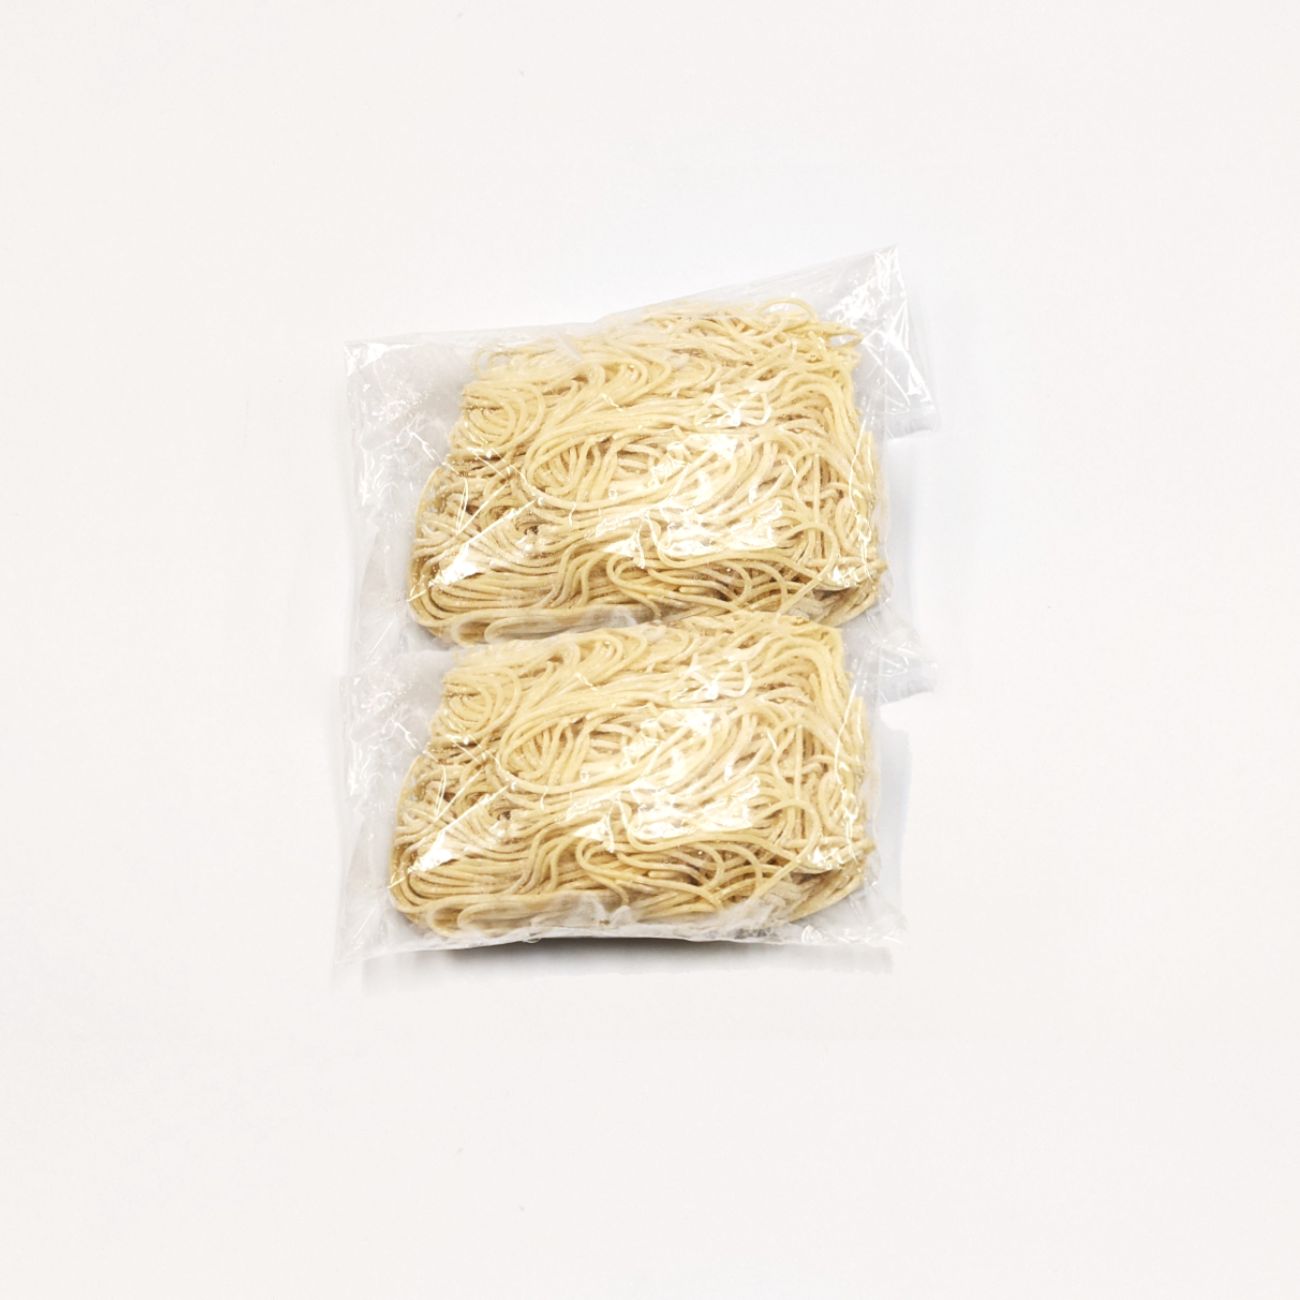 2 hakata noodles in individual zip bags